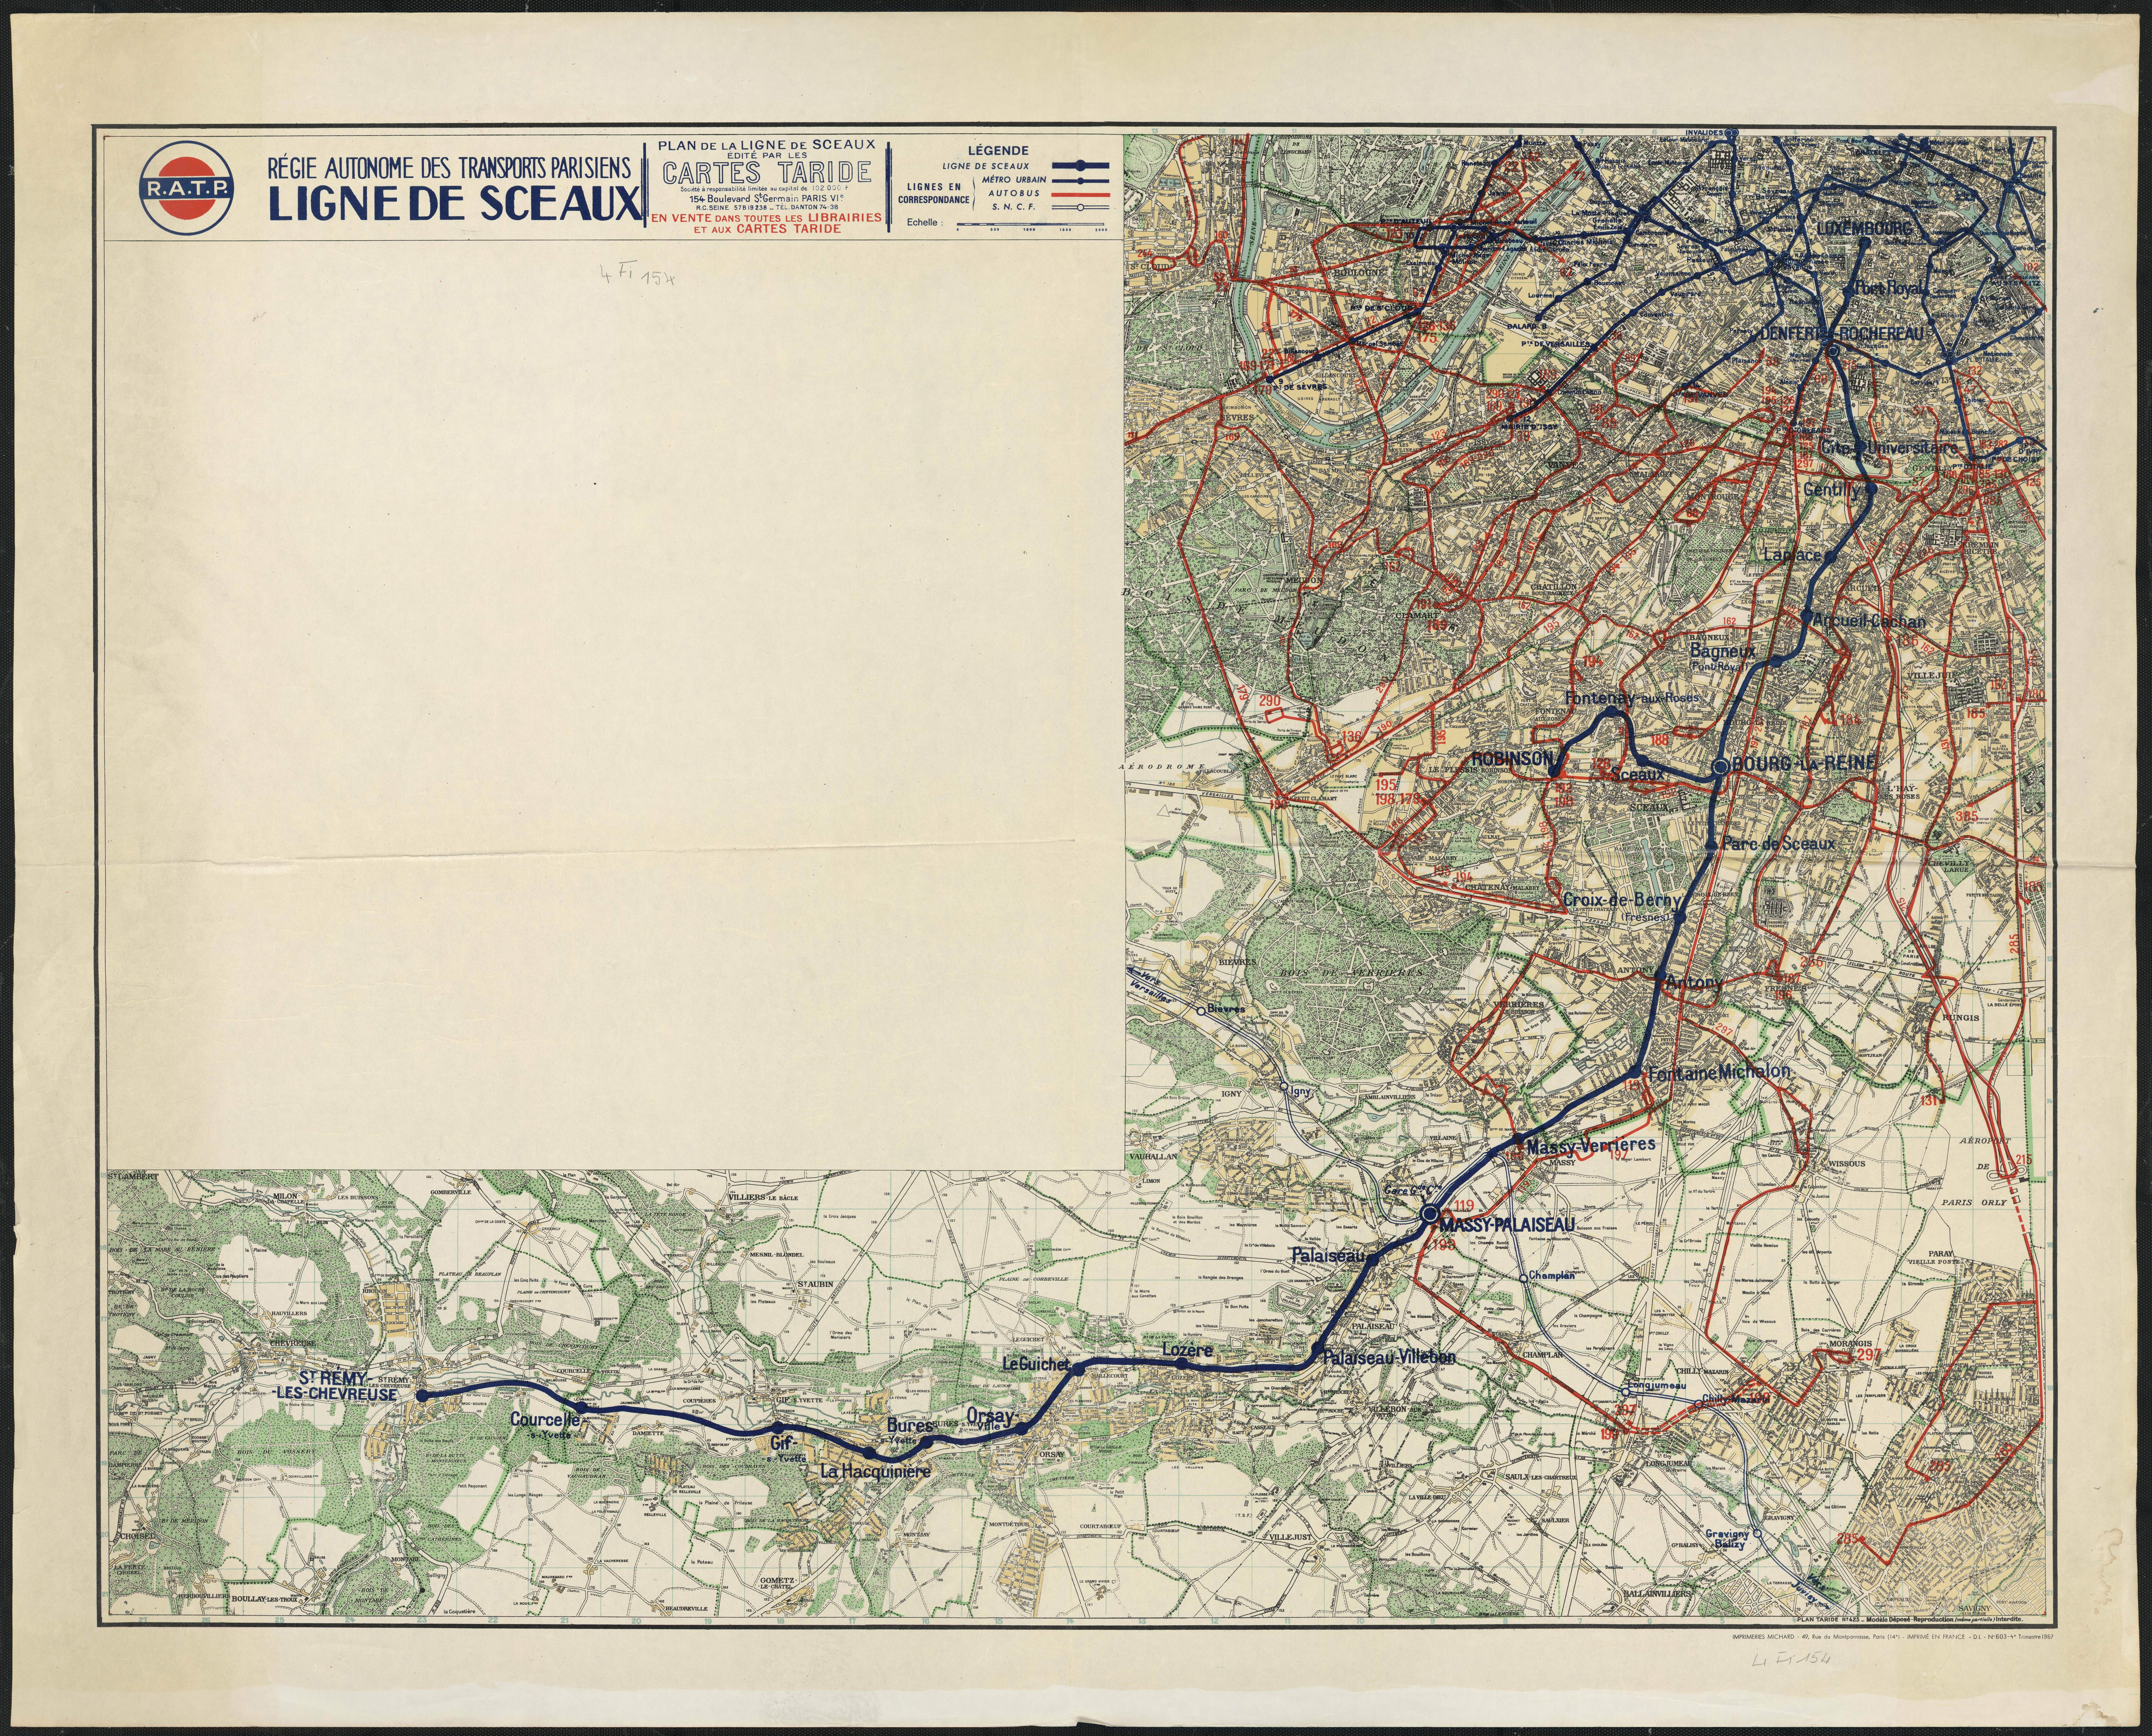 Plan de la ligne de Sceaux. 1967.